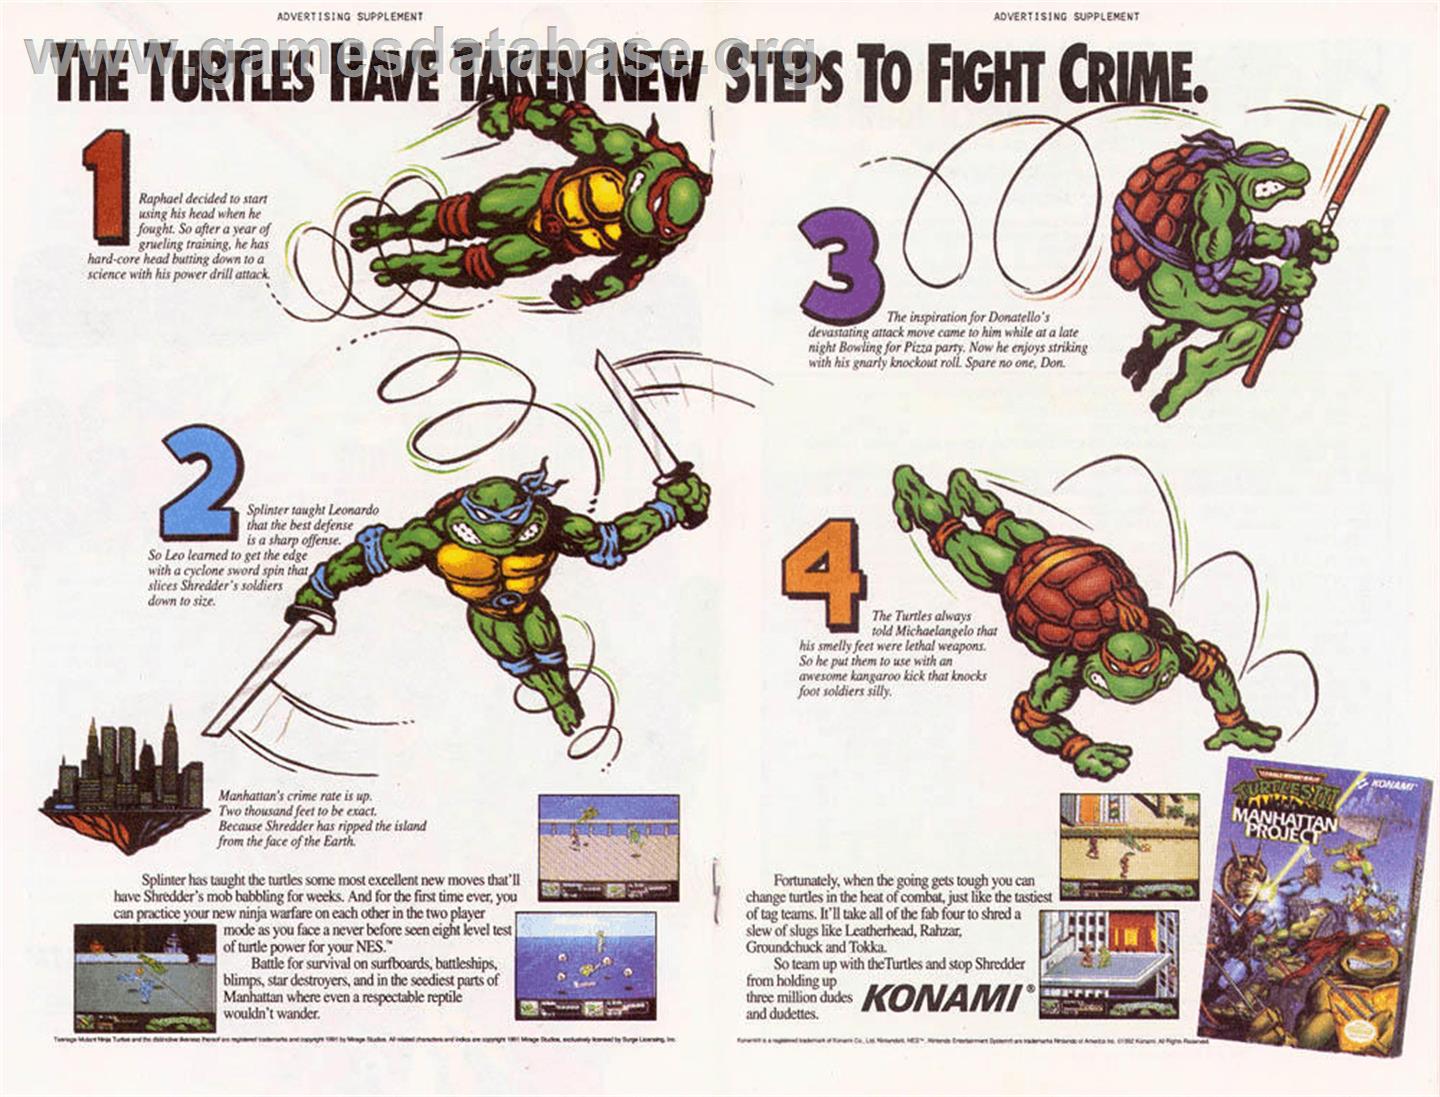 Teenage Mutant Ninja Turtles 3: The Manhattan Project - Nintendo NES - Artwork - Advert